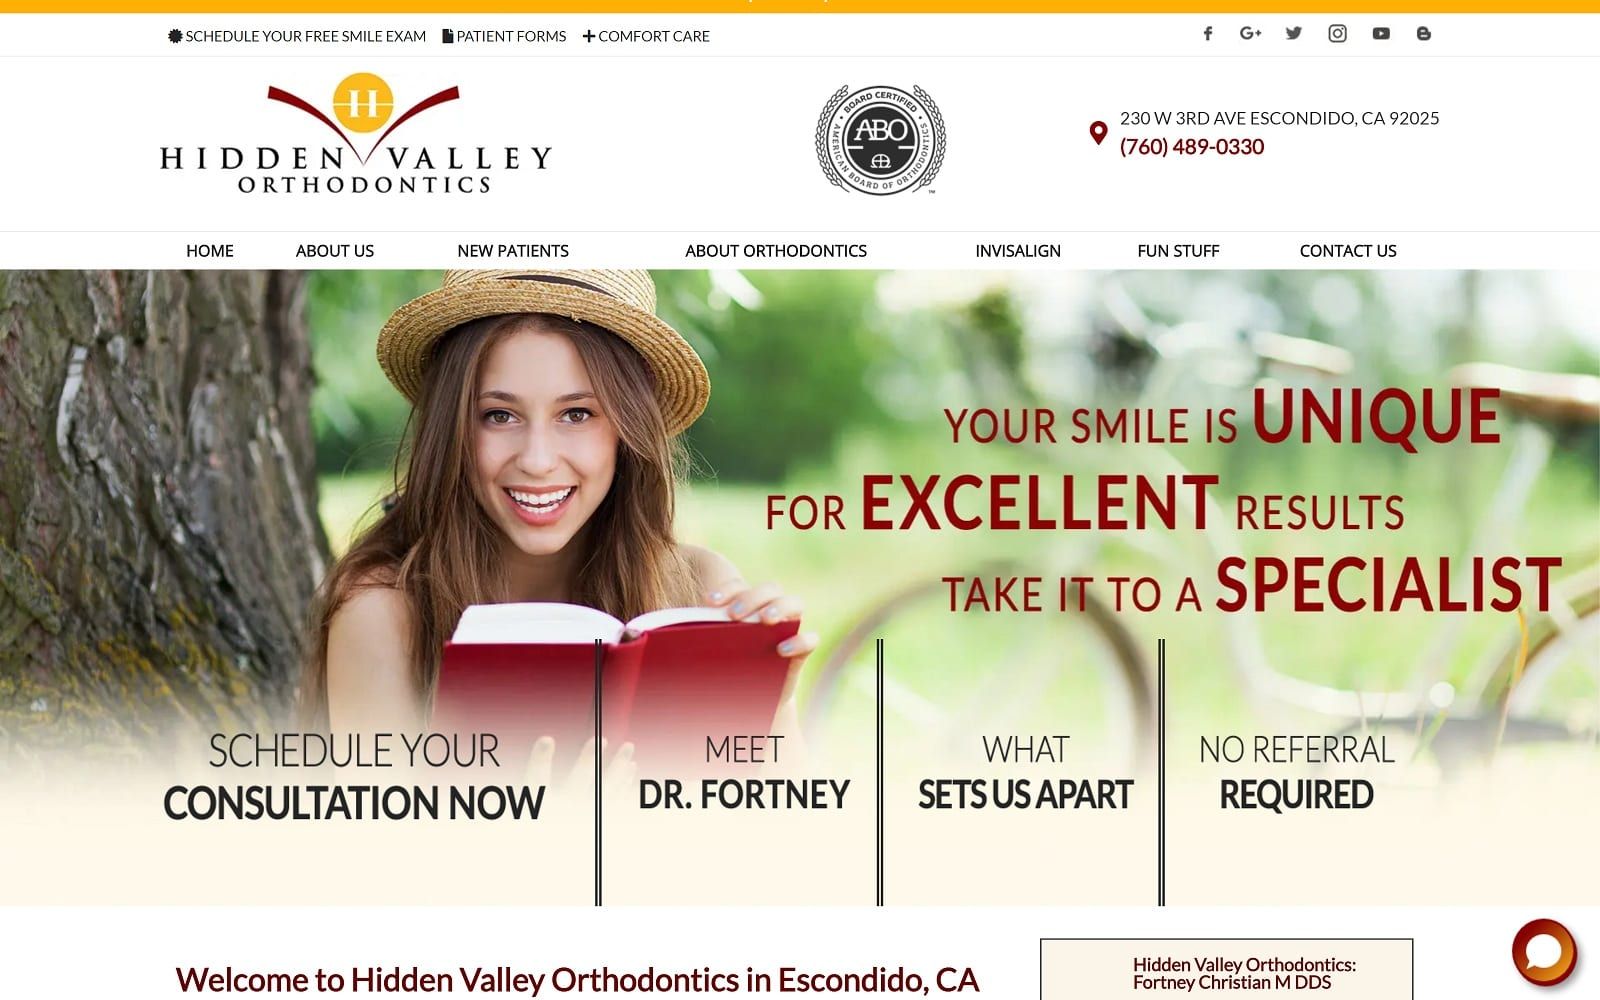 The screenshot of hidden valley orthodontics: fortney christian m dds hvortho. Com website